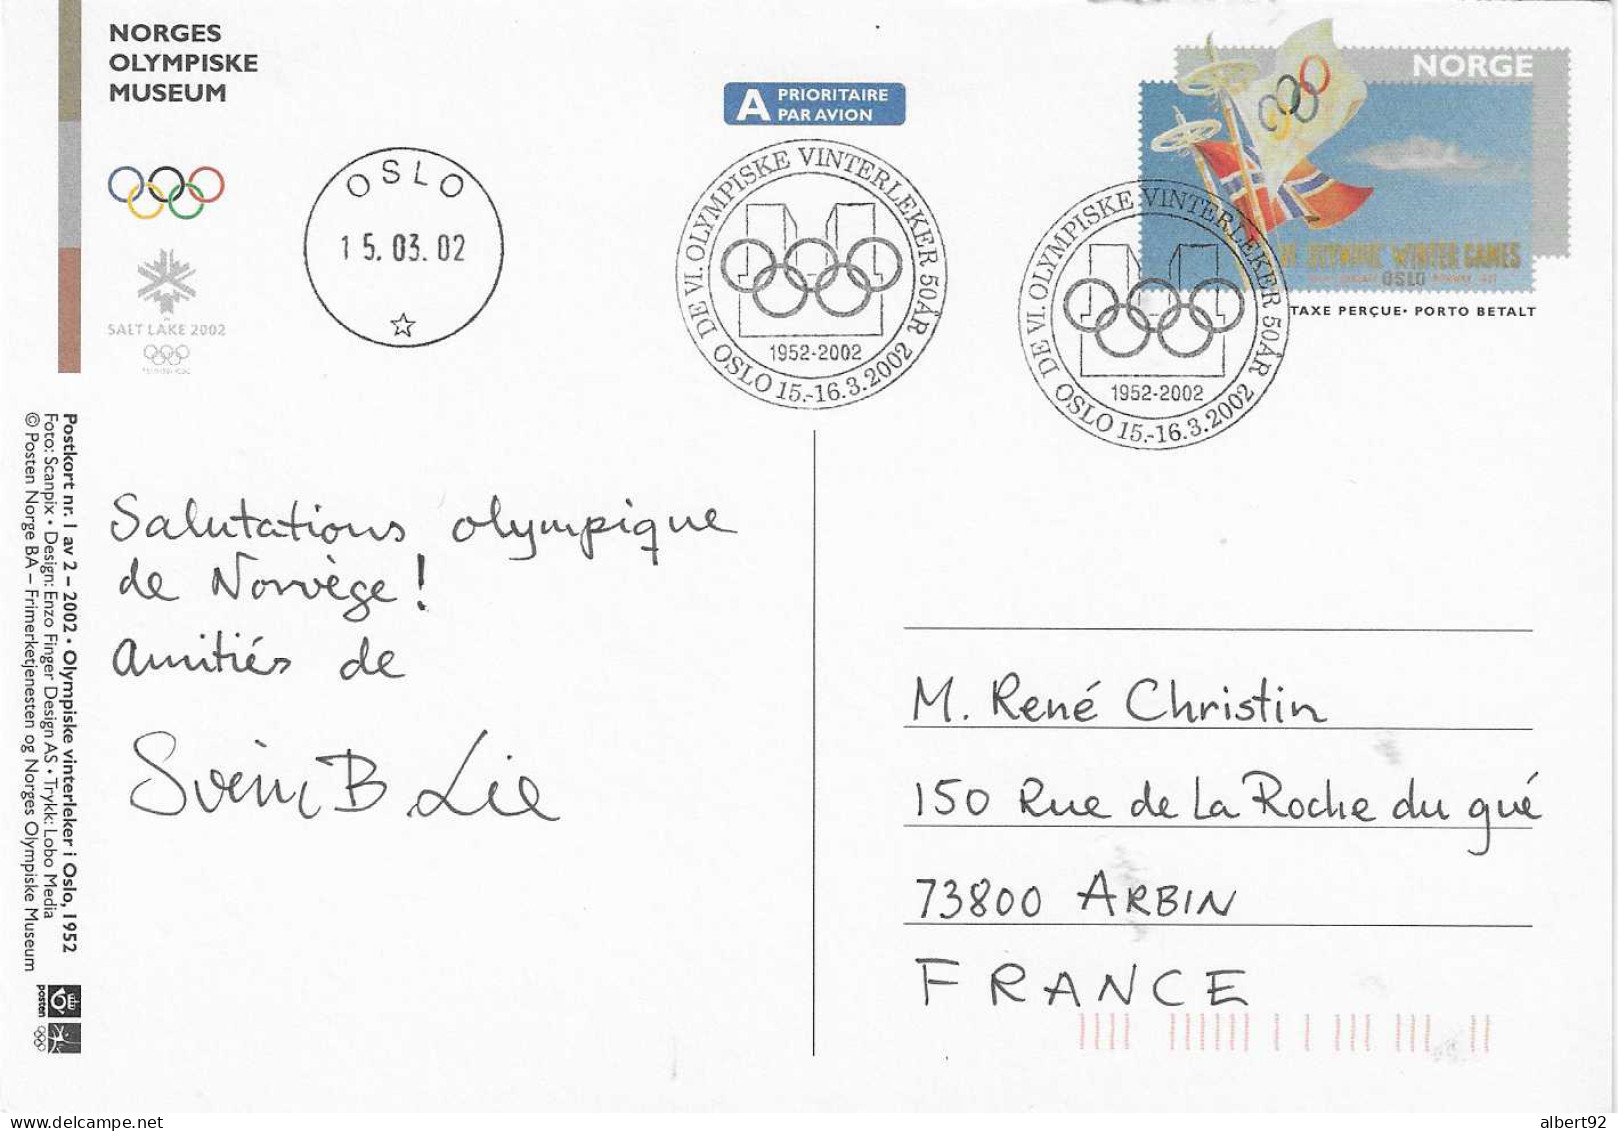 2002 50e Anniv. Des Jeux Olympiques D'Oslo 1952: Hommage Aux Médaillés Or: H.Andersen (patinage)et H.Brenden (ski Fond) - Inverno1952: Oslo